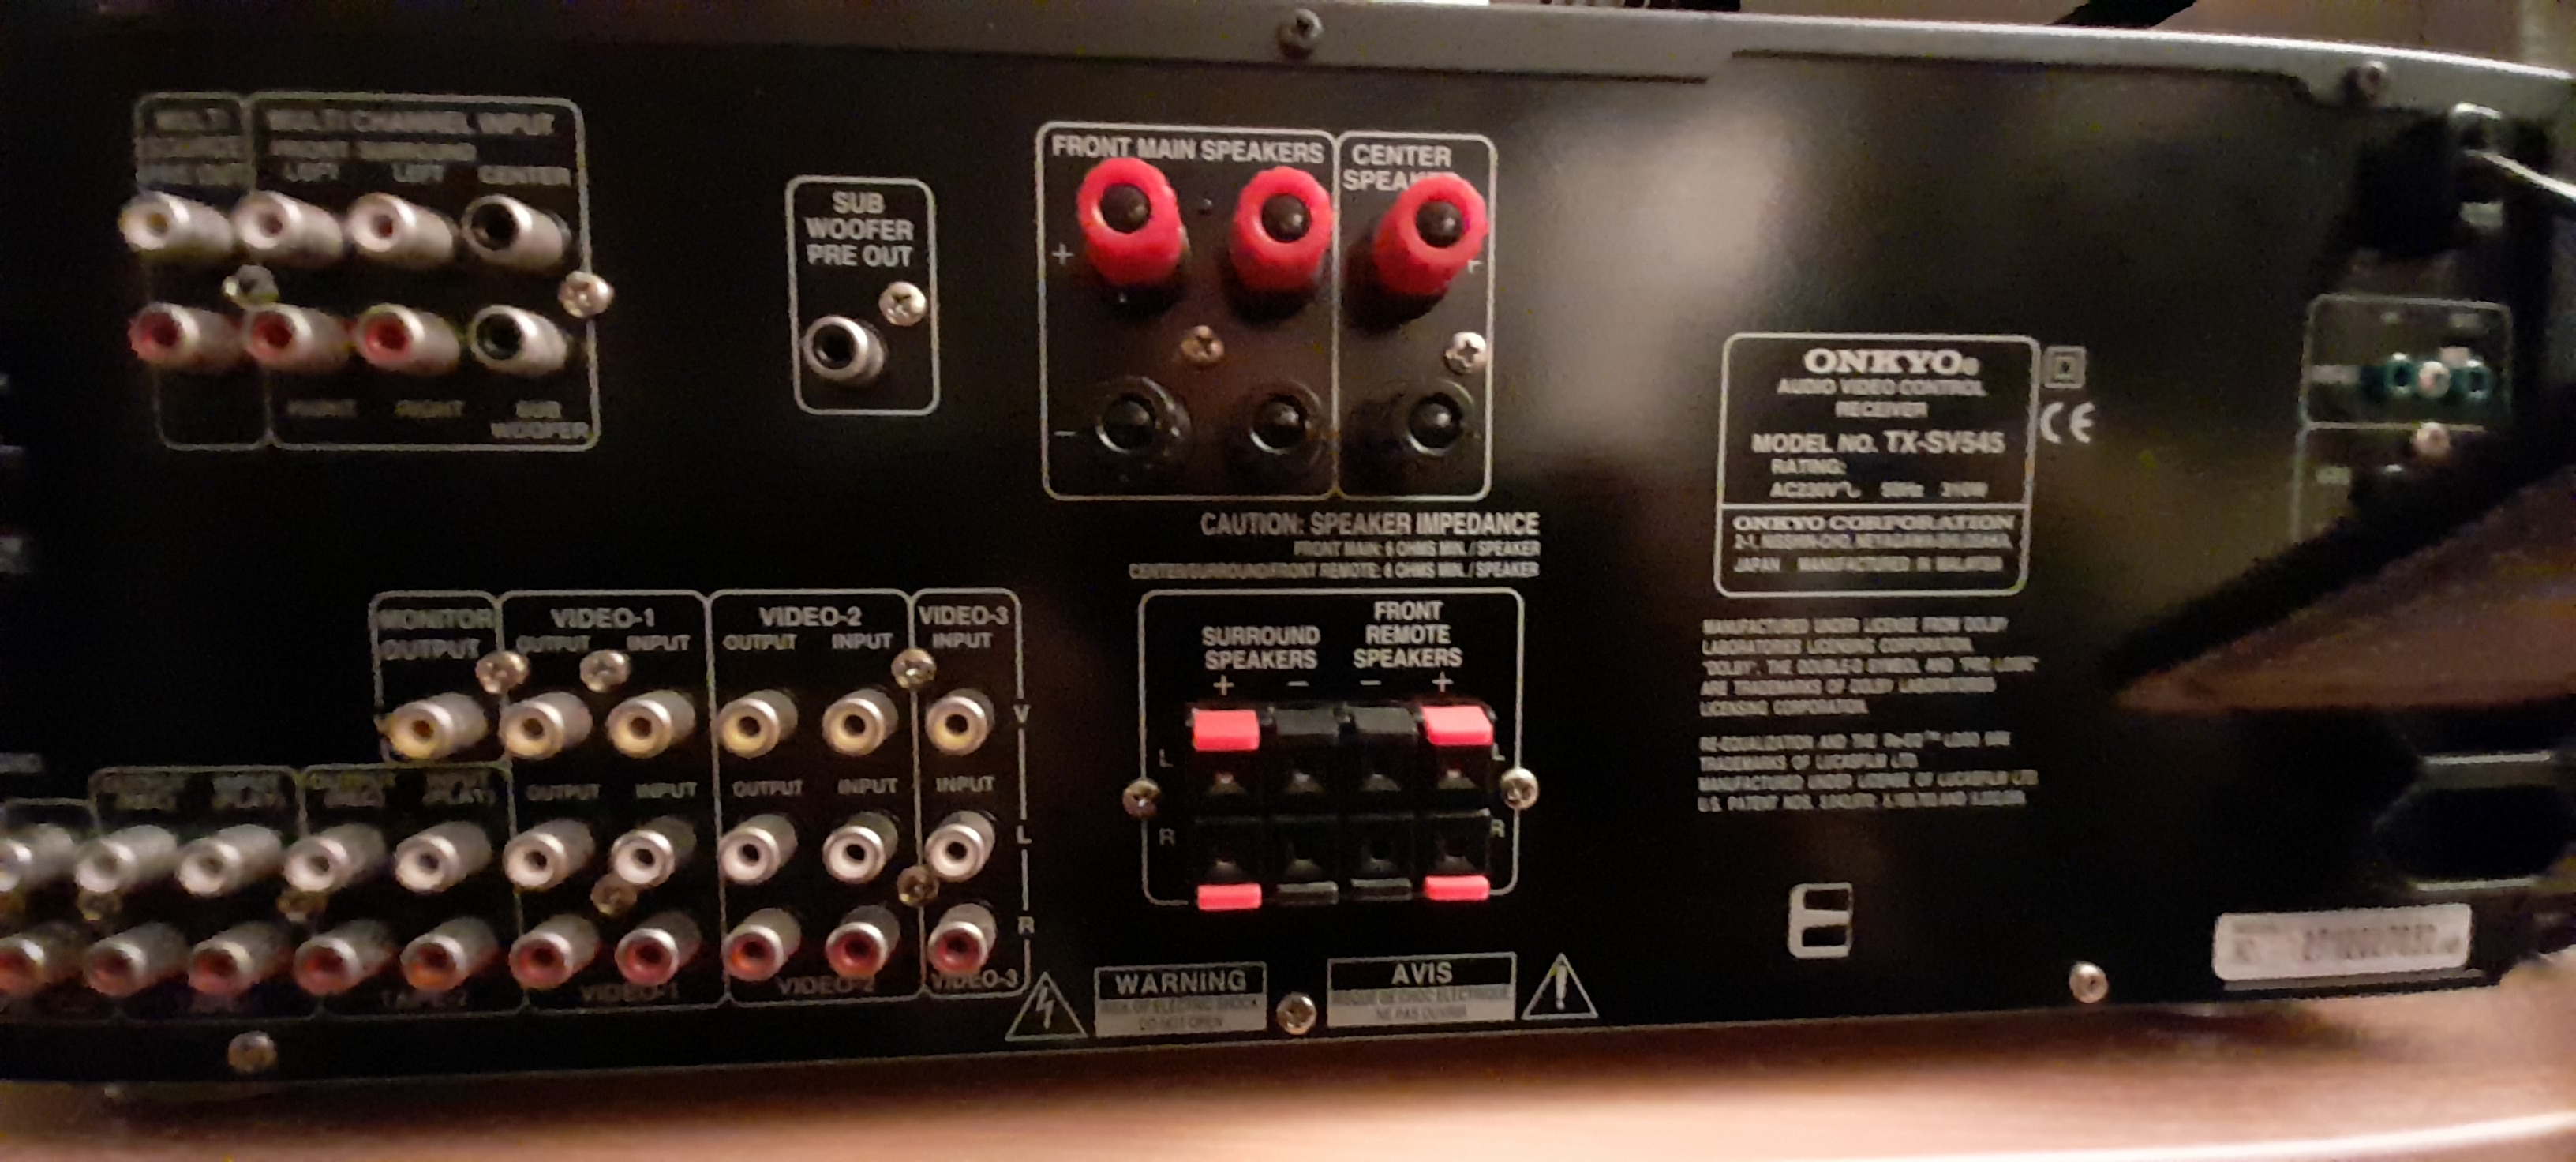 Hoe sluit ik 2 paar speakers aan op mijn receiver van Onkyo TX-SV545? GoeieVraag